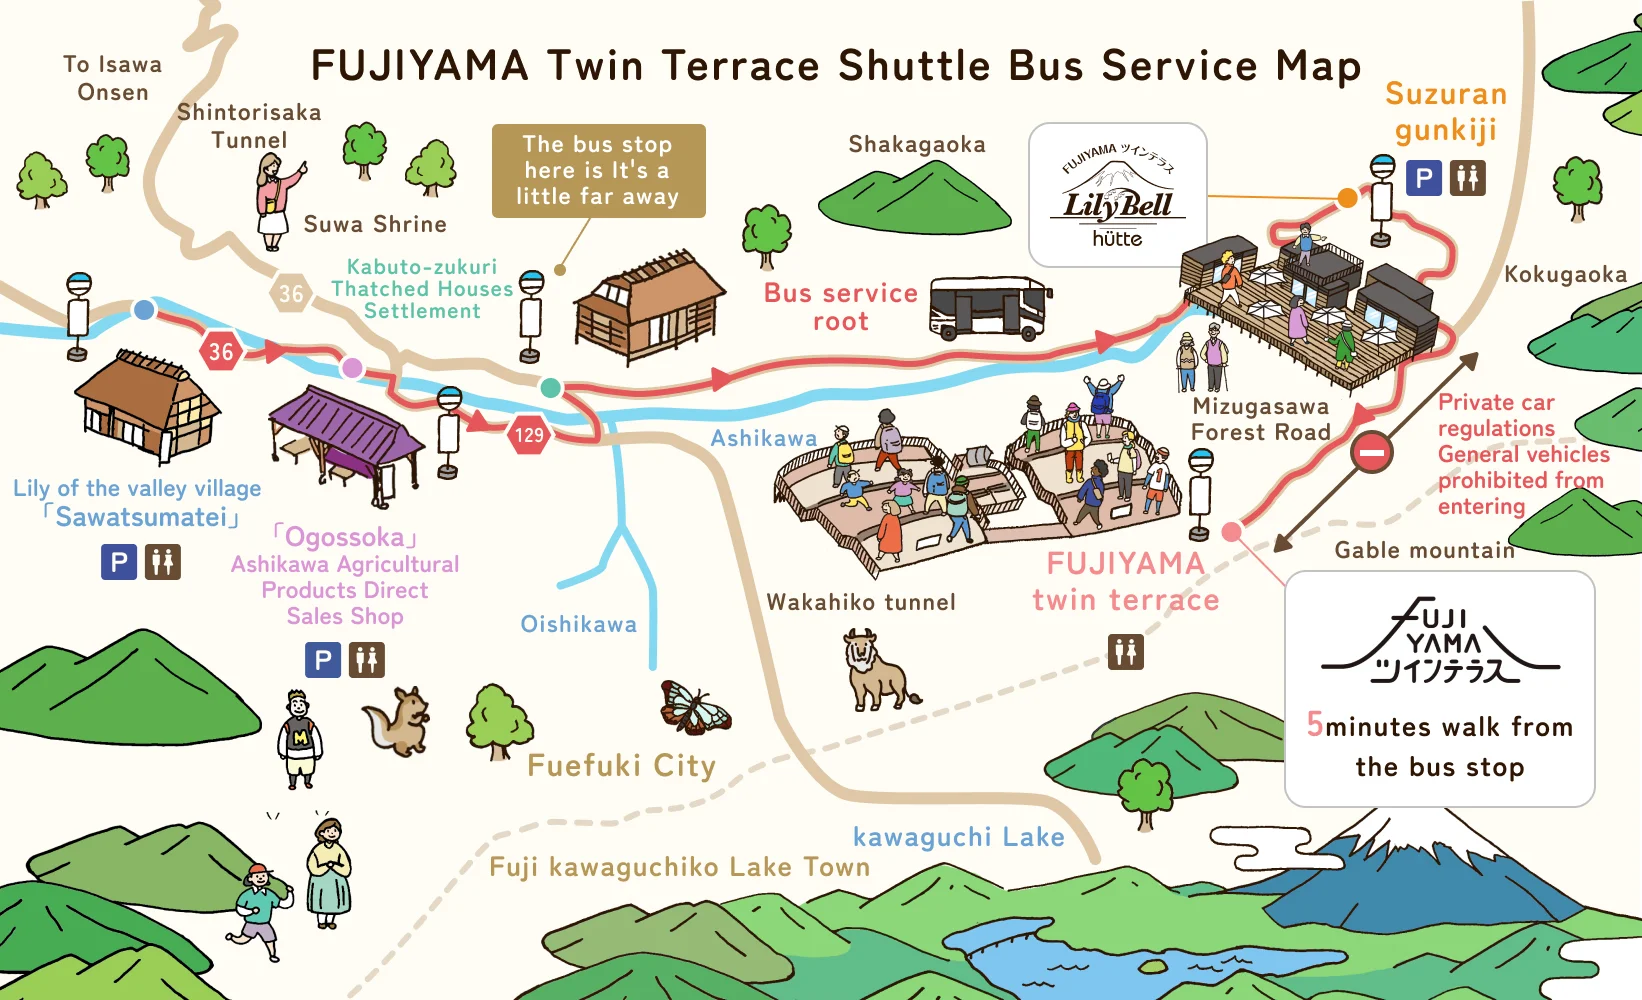 FUJIYAMA Twin Terrace shuttle bus route map